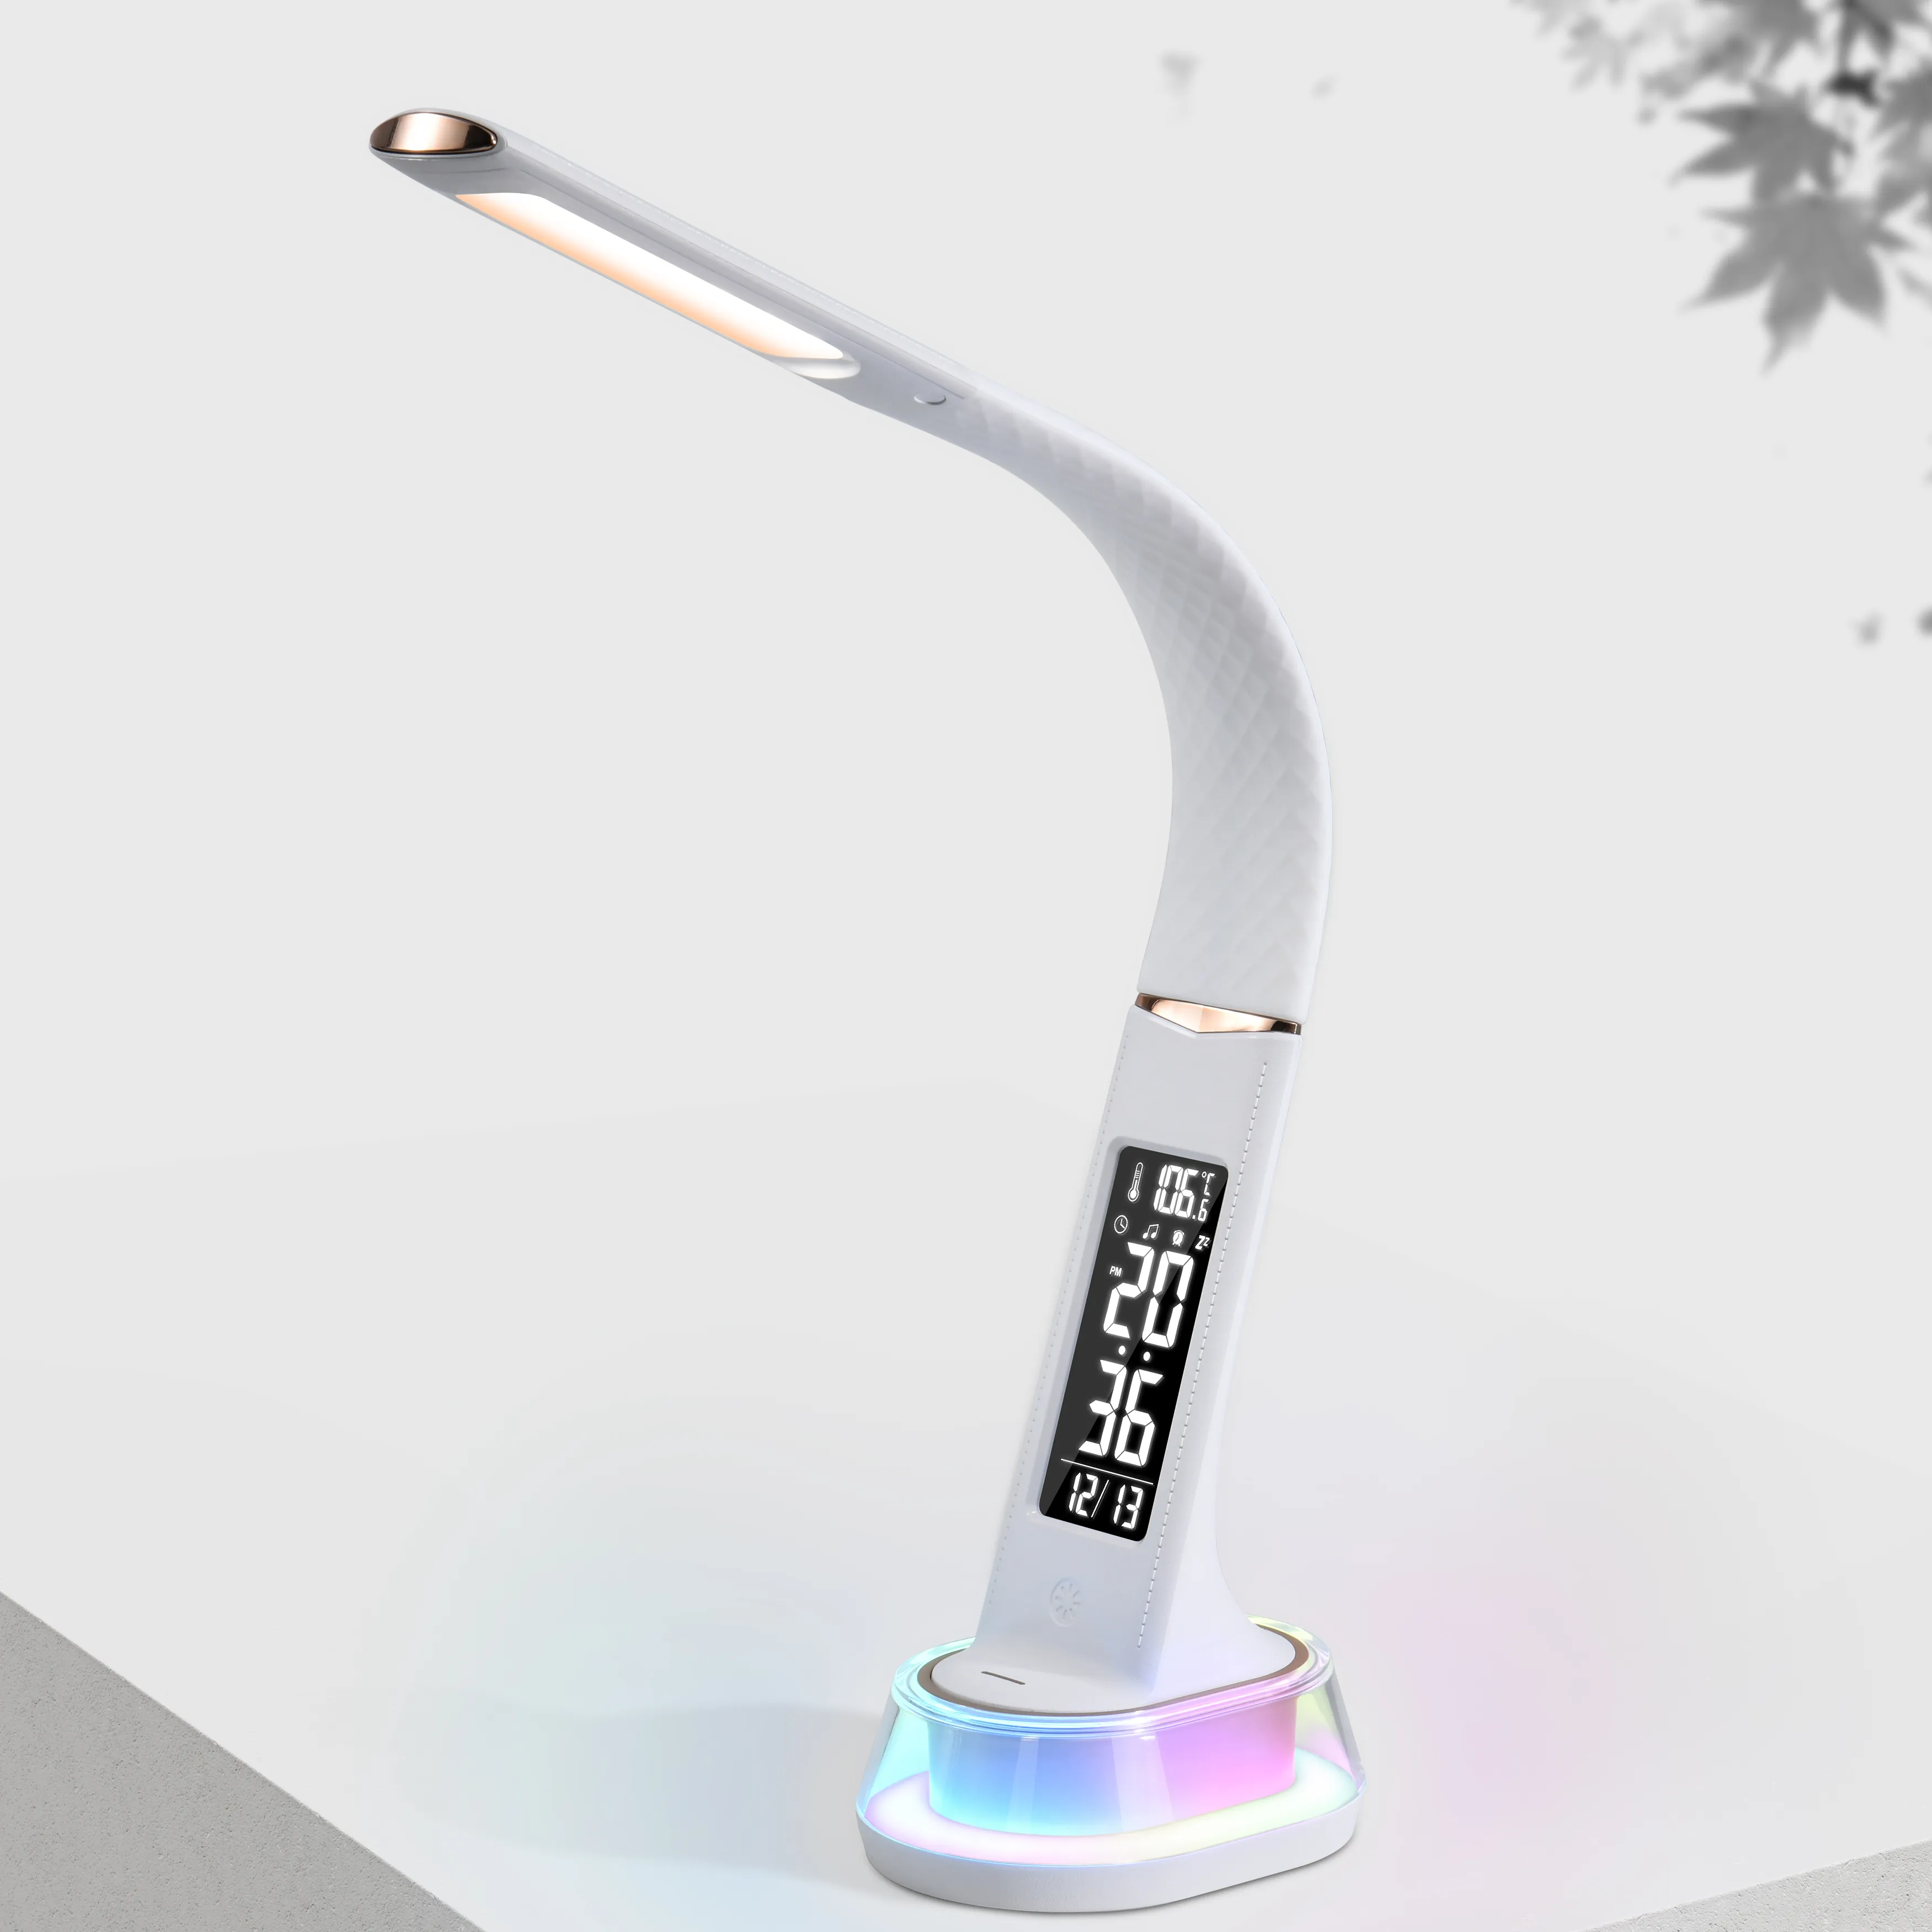 Nouveau Design Éclairage Intérieur 3 Mode Lumière Colorée RVB Décor À La Maison HD Horloge Affichage Réveil Table Lampe De Bureau